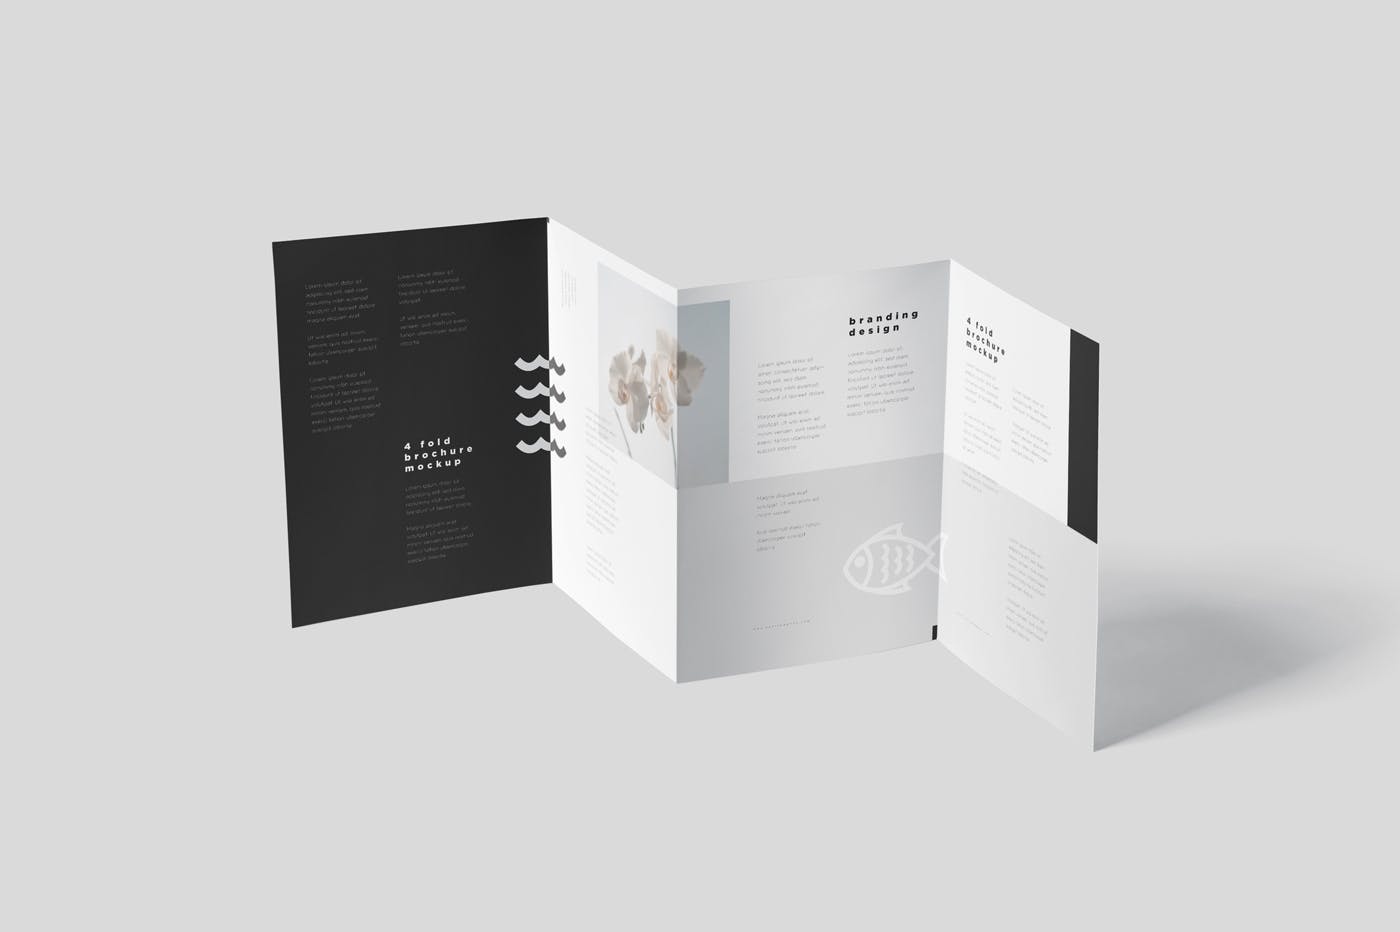 多尺寸四折页宣传册印刷效果图样机模板 4-Fold Brochure Mockup Set – Din A4 A5 A6插图(4)